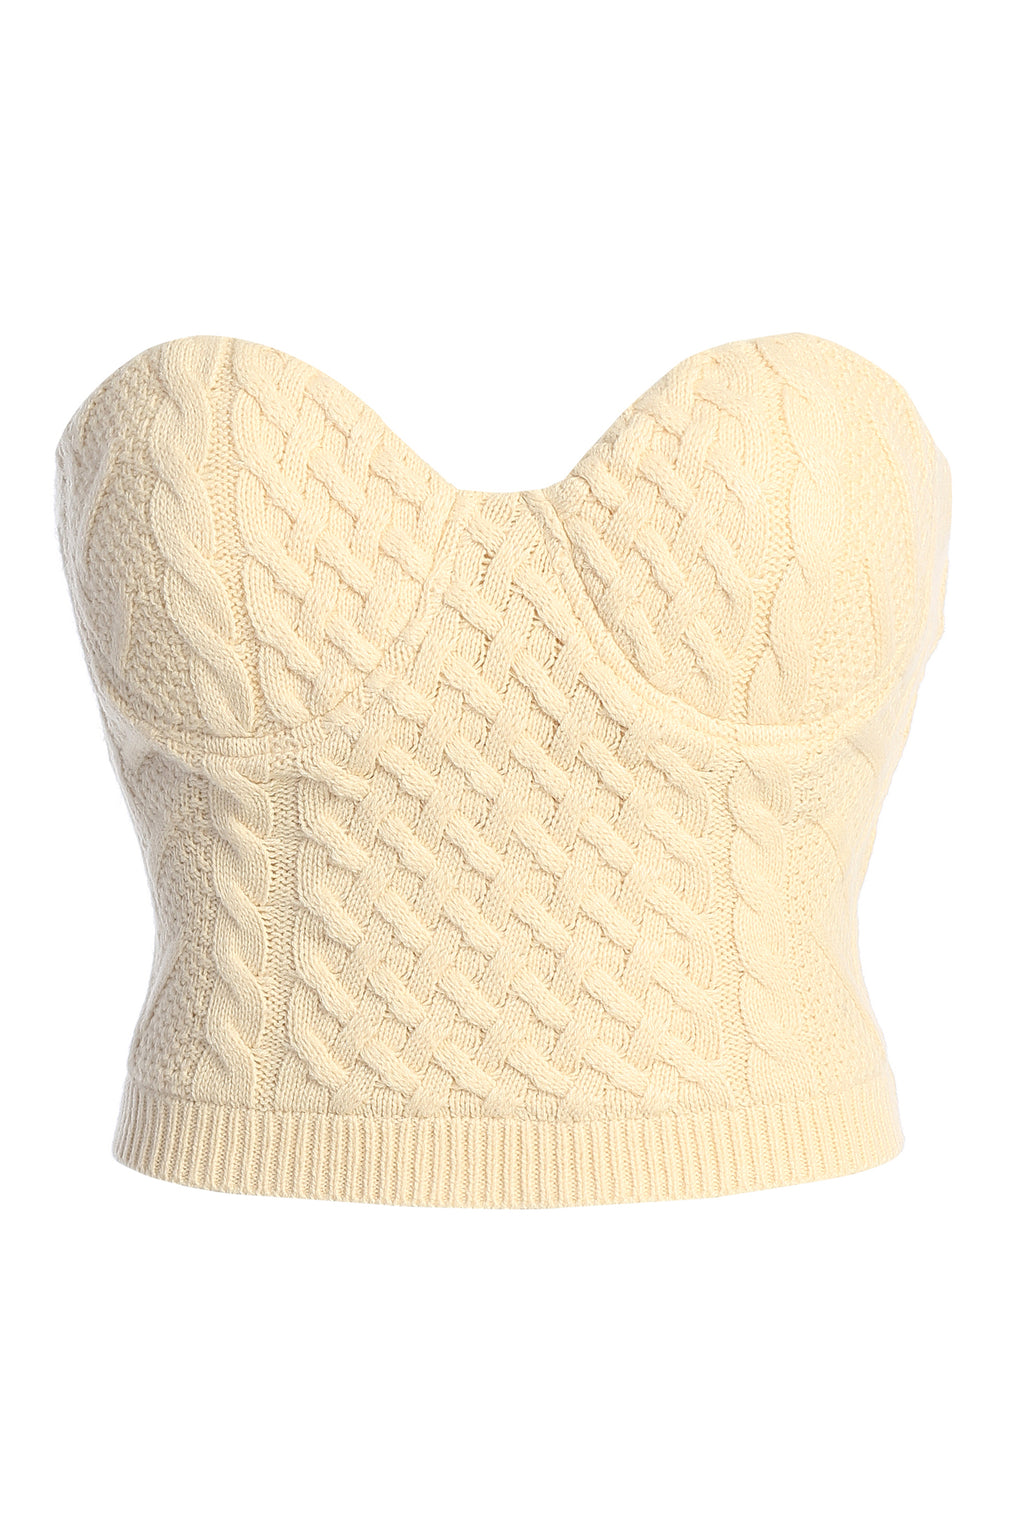 Buttercream Knit JLUXLABEL Davina – Bustier Sweater Top